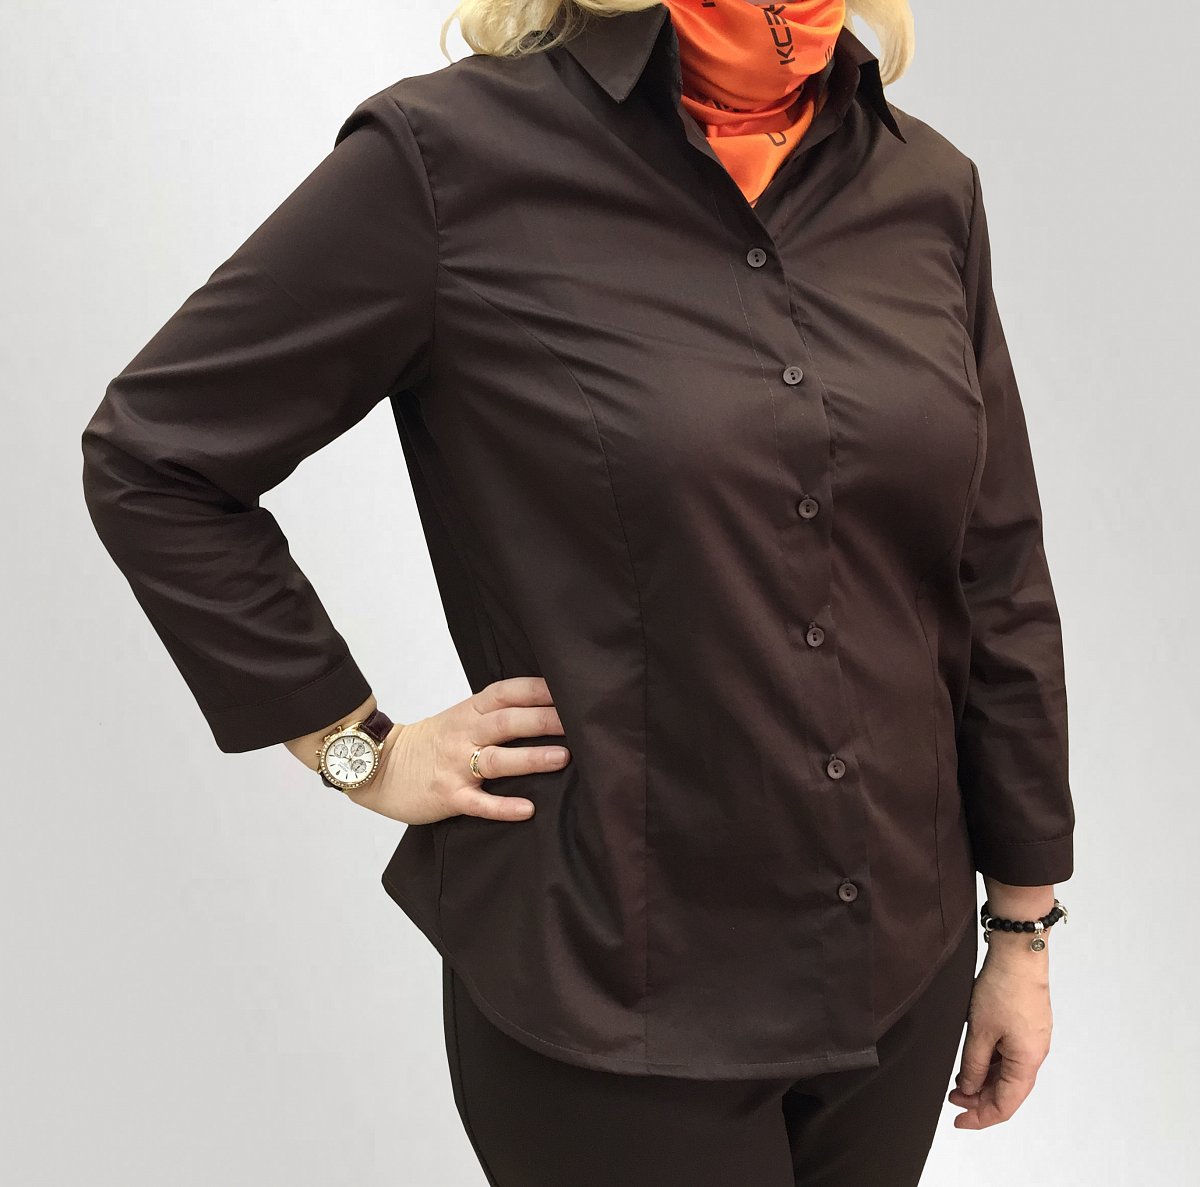 Пошив блузок на заказ - пример модели блузка женская